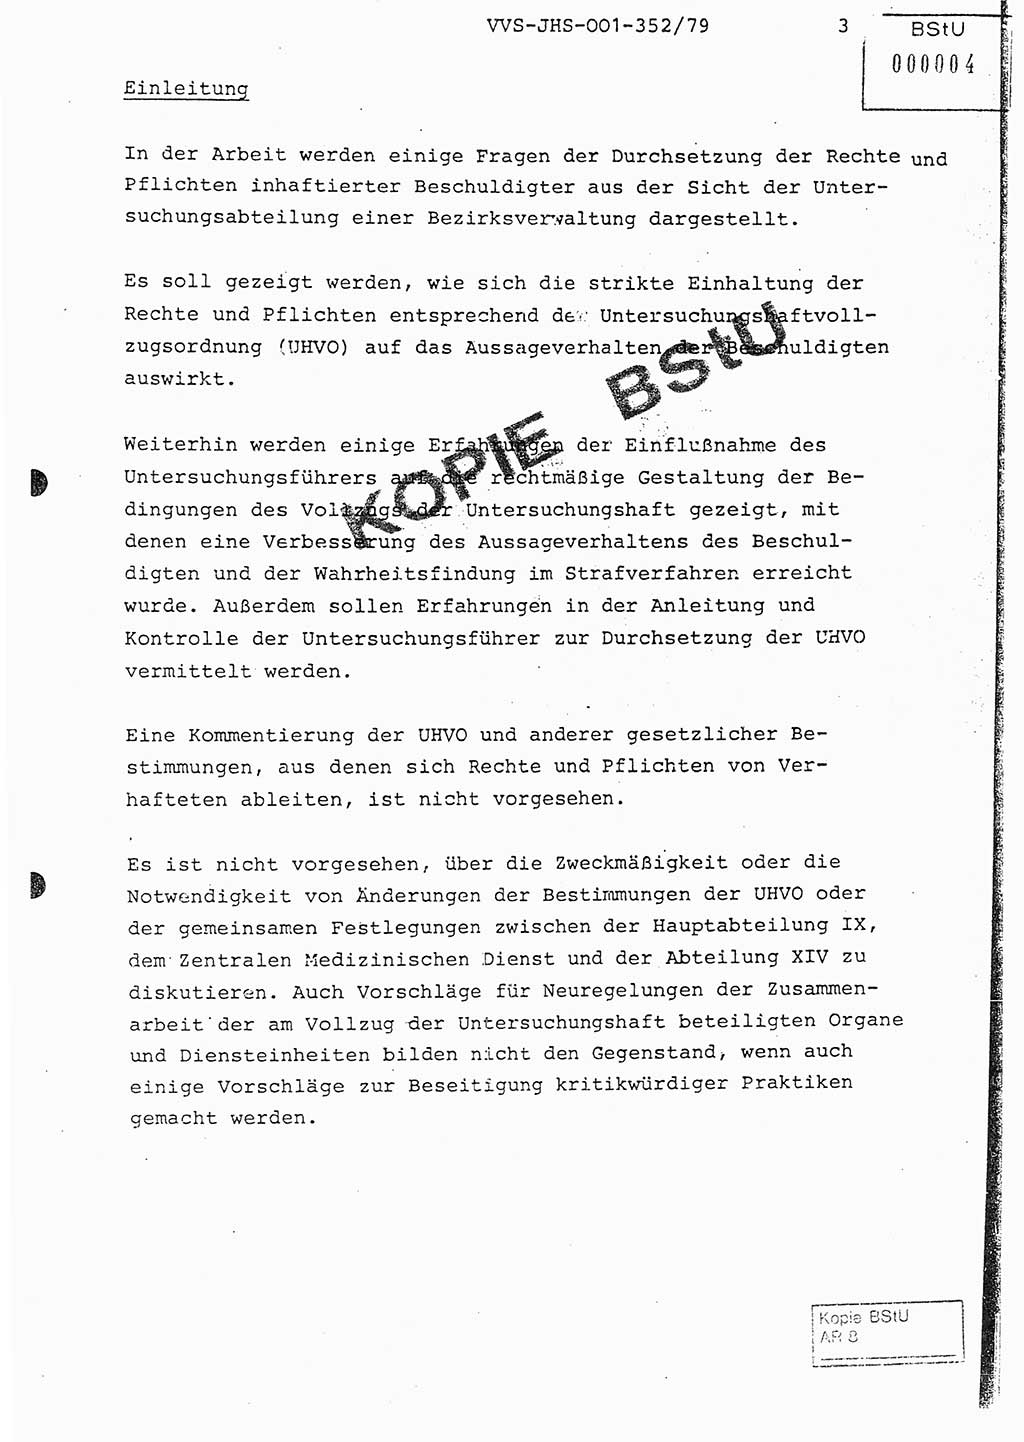 Diplomarbeit Hauptmann Peter Wittum (BV Bln. Abt. HA Ⅸ), Ministerium für Staatssicherheit (MfS) [Deutsche Demokratische Republik (DDR)], Juristische Hochschule (JHS), Vertrauliche Verschlußsache (VVS) o001-352/79, Potsdam 1979, Seite 3 (Dipl.-Arb. MfS DDR JHS VVS o001-352/79 1979, S. 3)